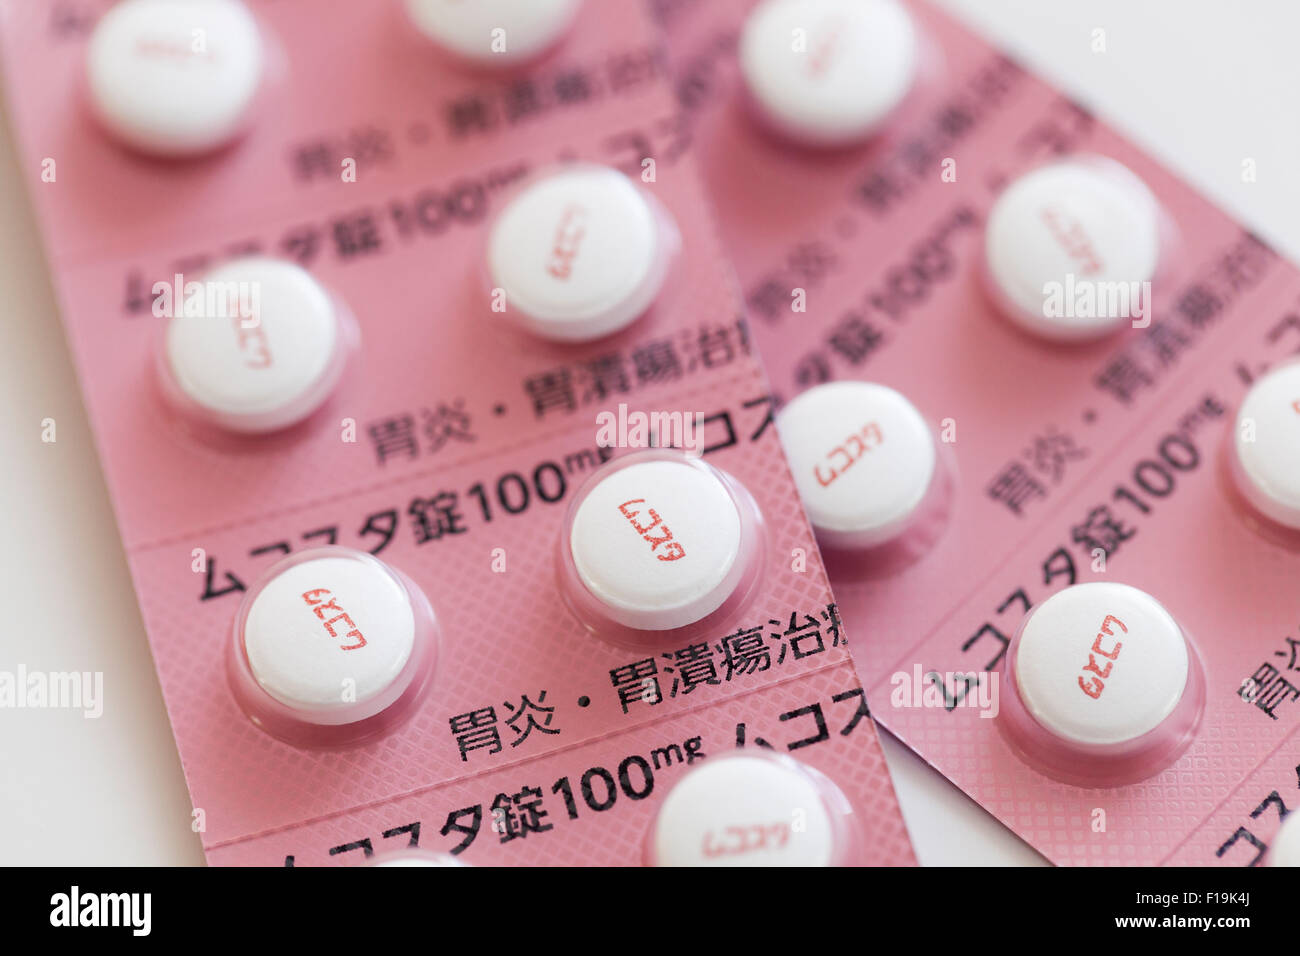 Mucosta (Rebamipide) Medizin für Magengeschwüre, japanische Verpackung Stockfoto